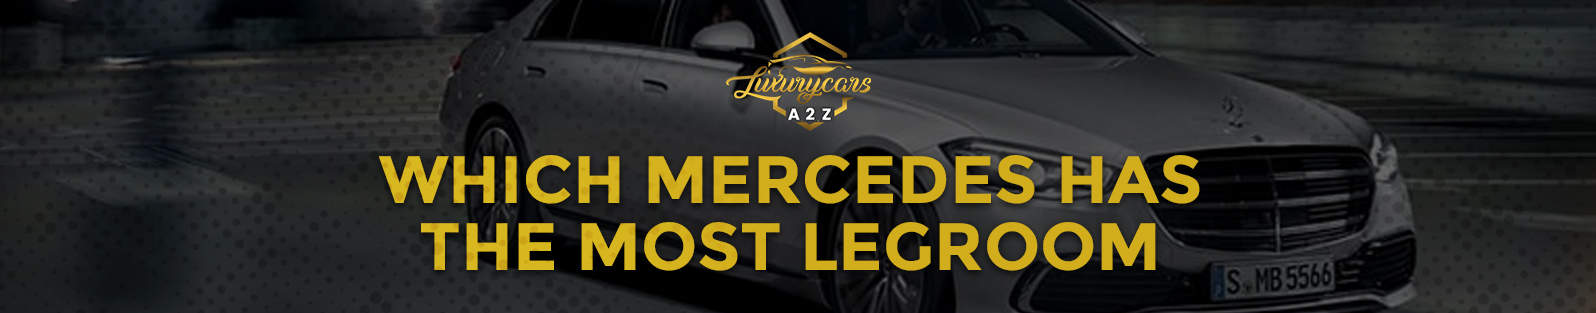 Quelle Mercedes offre le plus d'espace pour les jambes ?